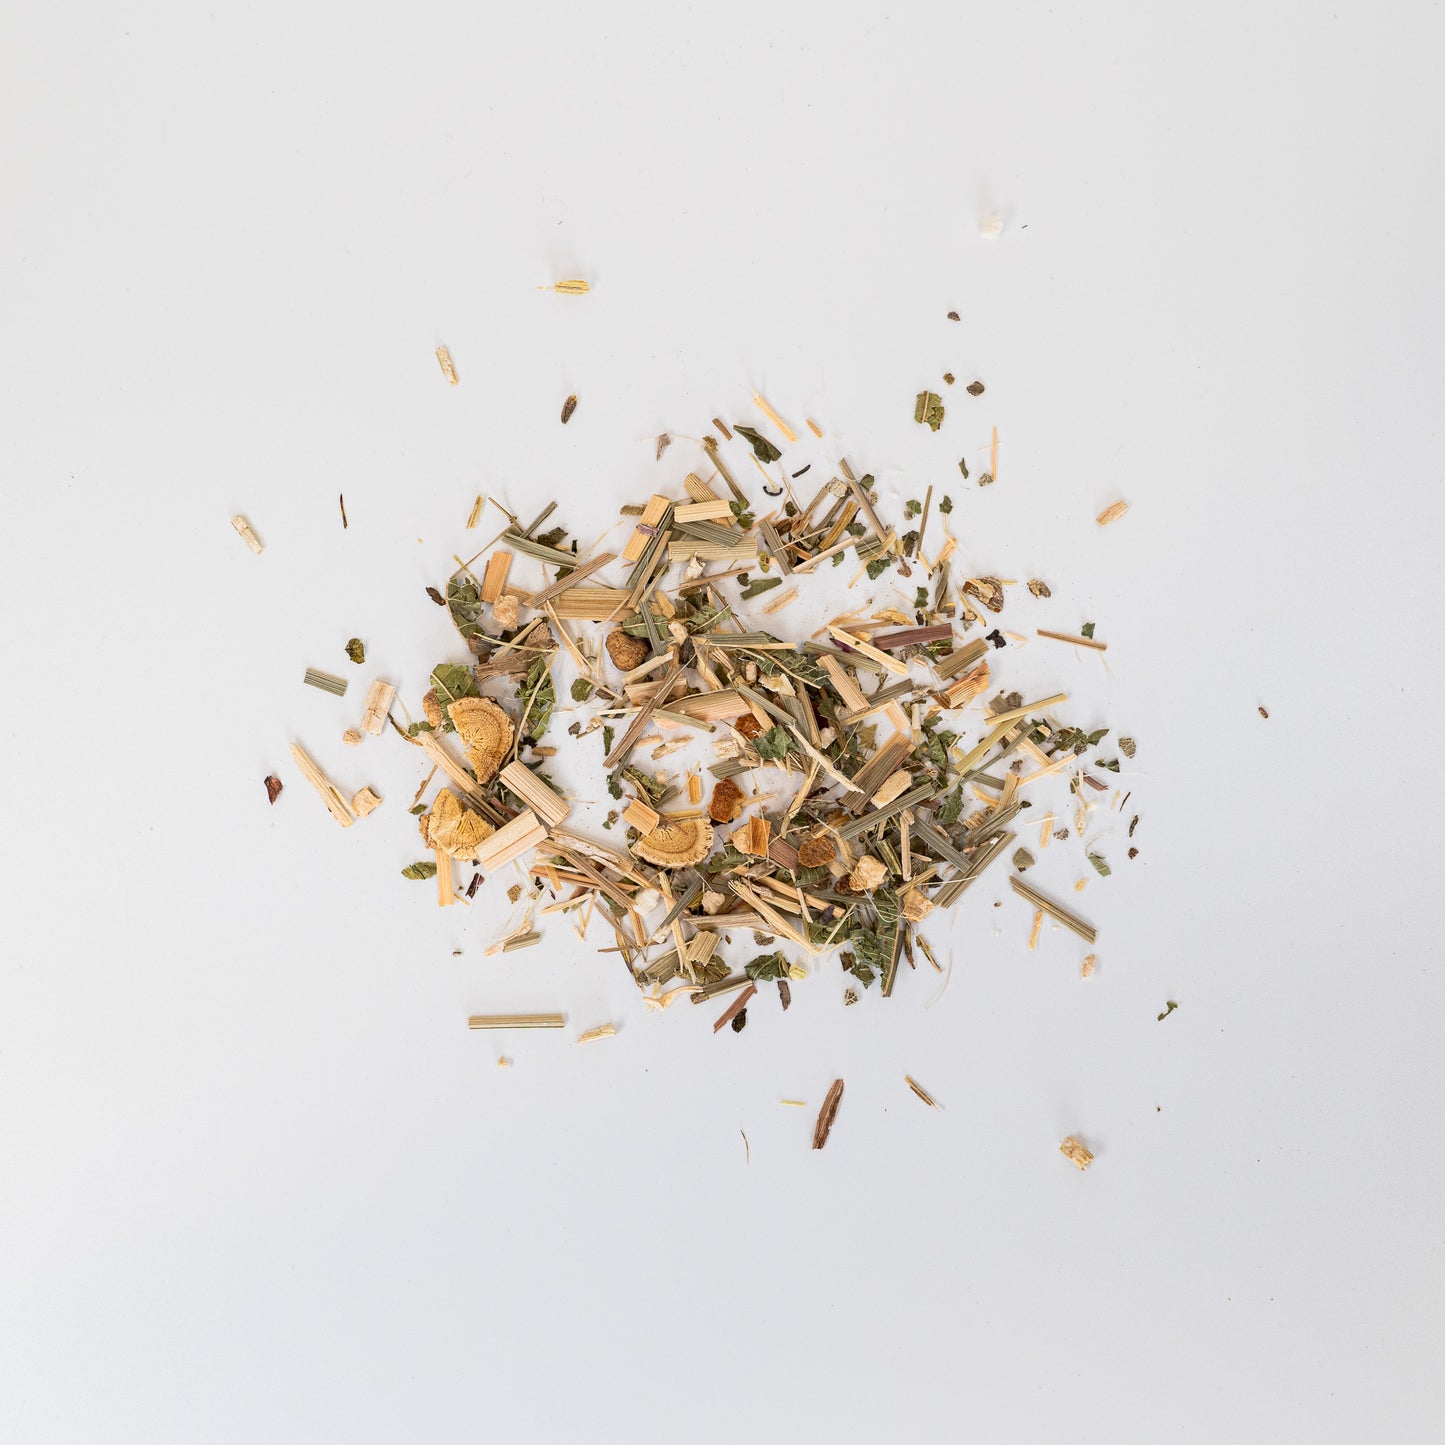 organic loose leaf tea